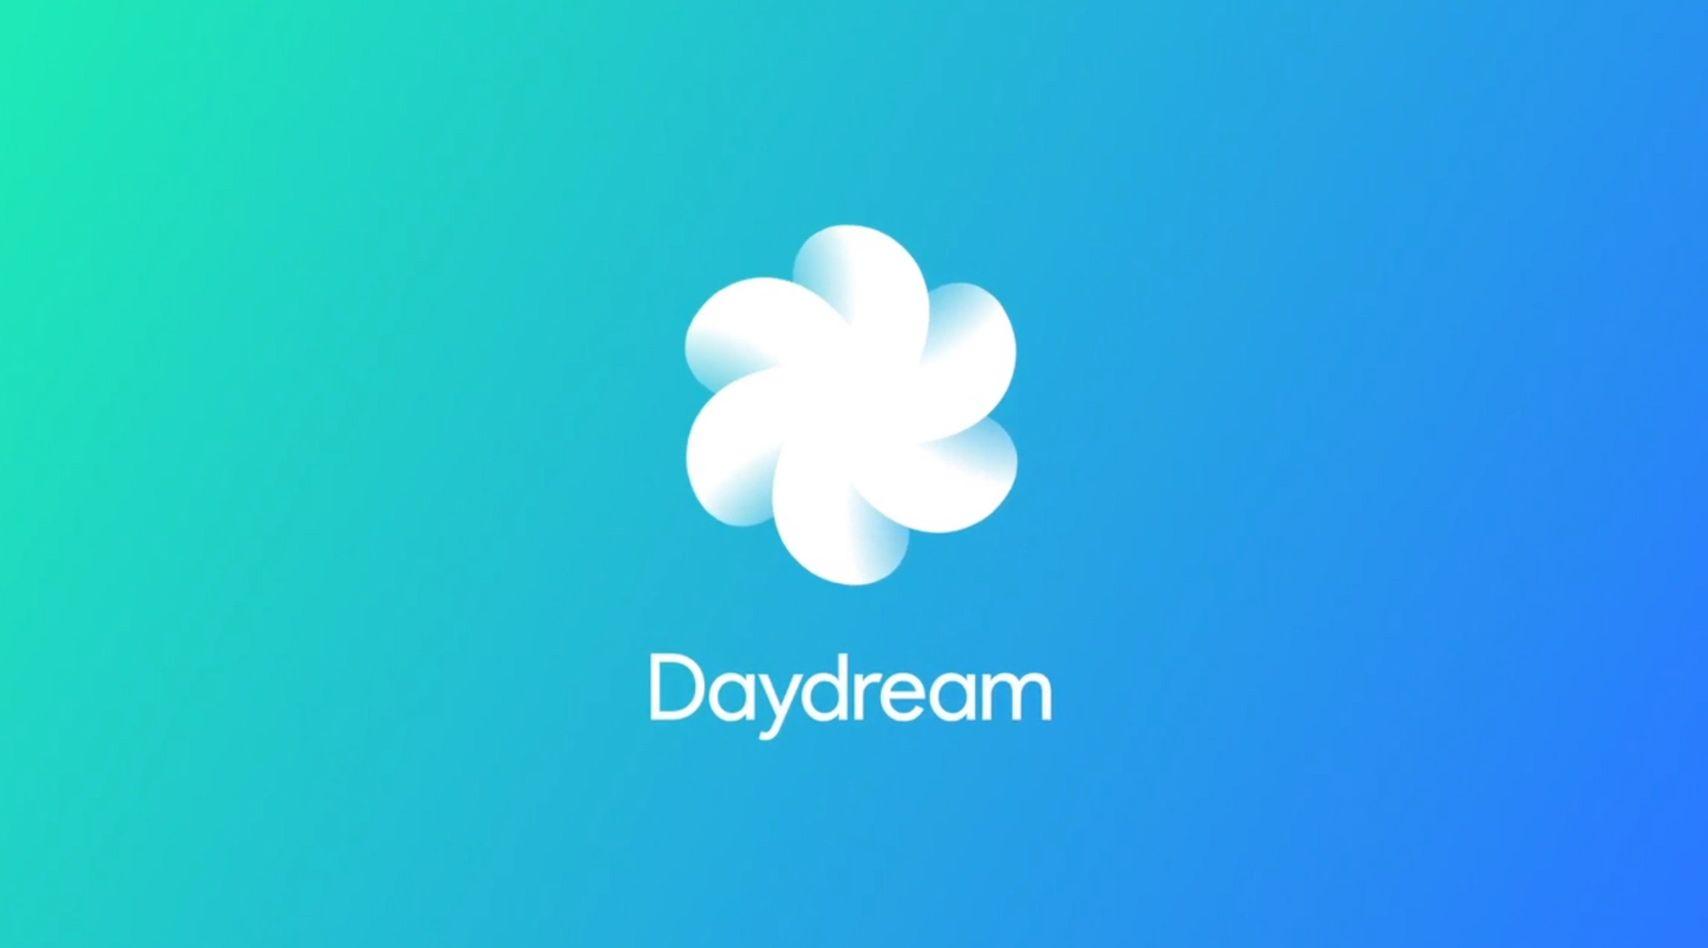 Daydream Logo - Speaking Volumes